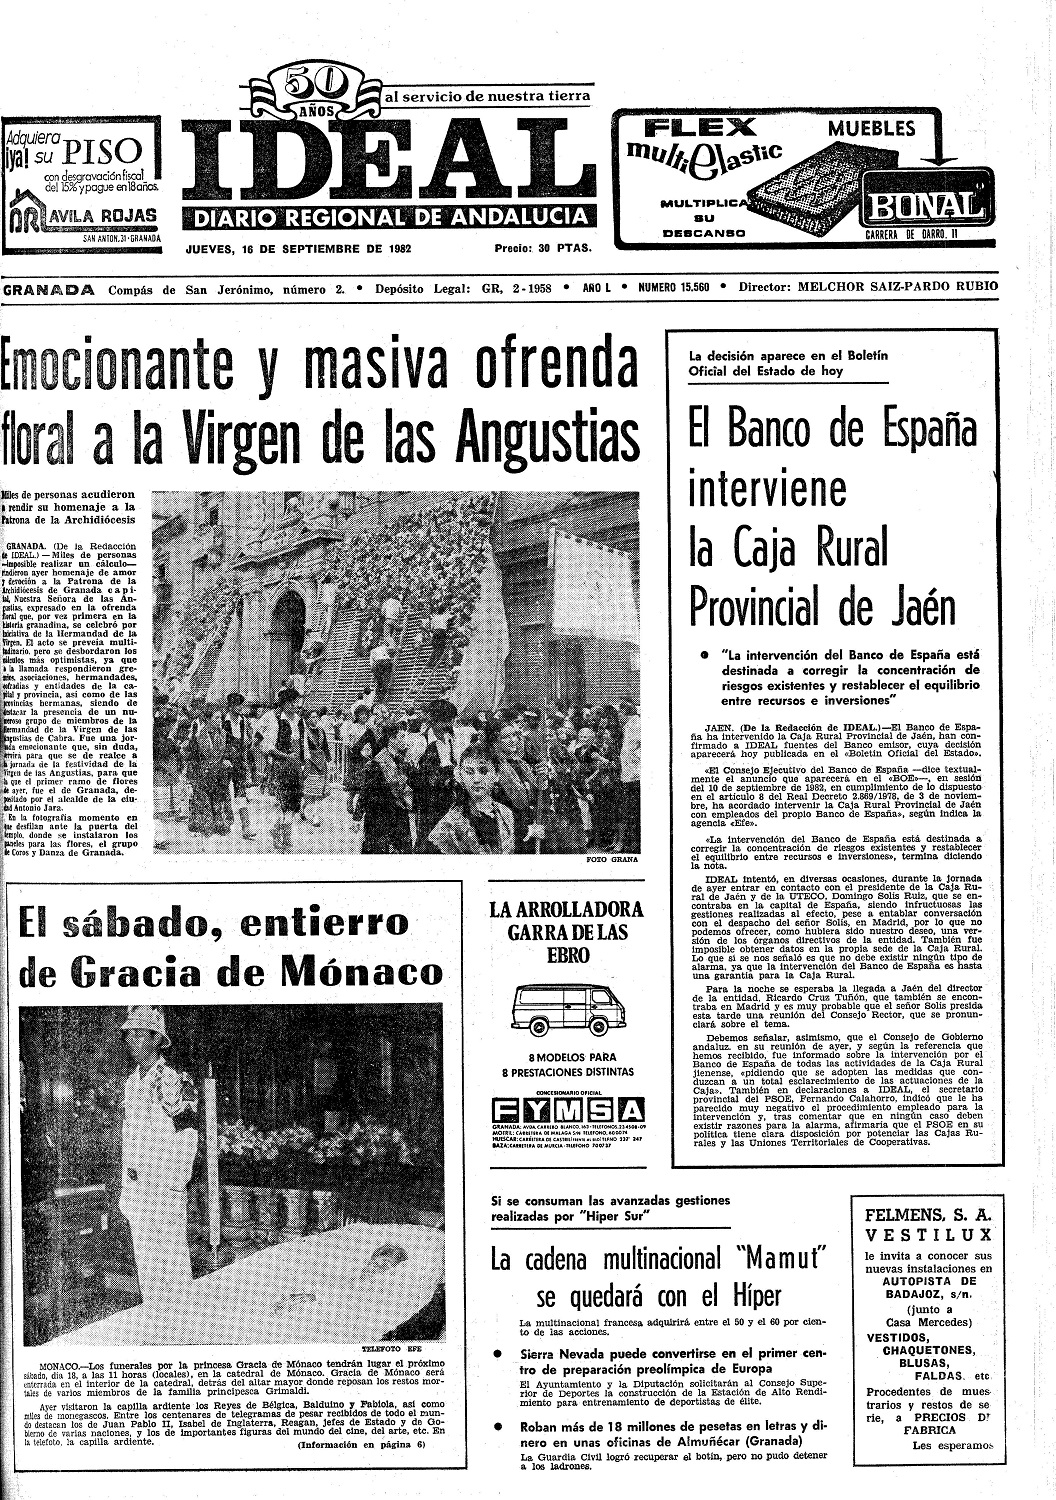 Portadas Diario Ideal 16 de septiembre - Hermandad de la Virgen de las  Angustias